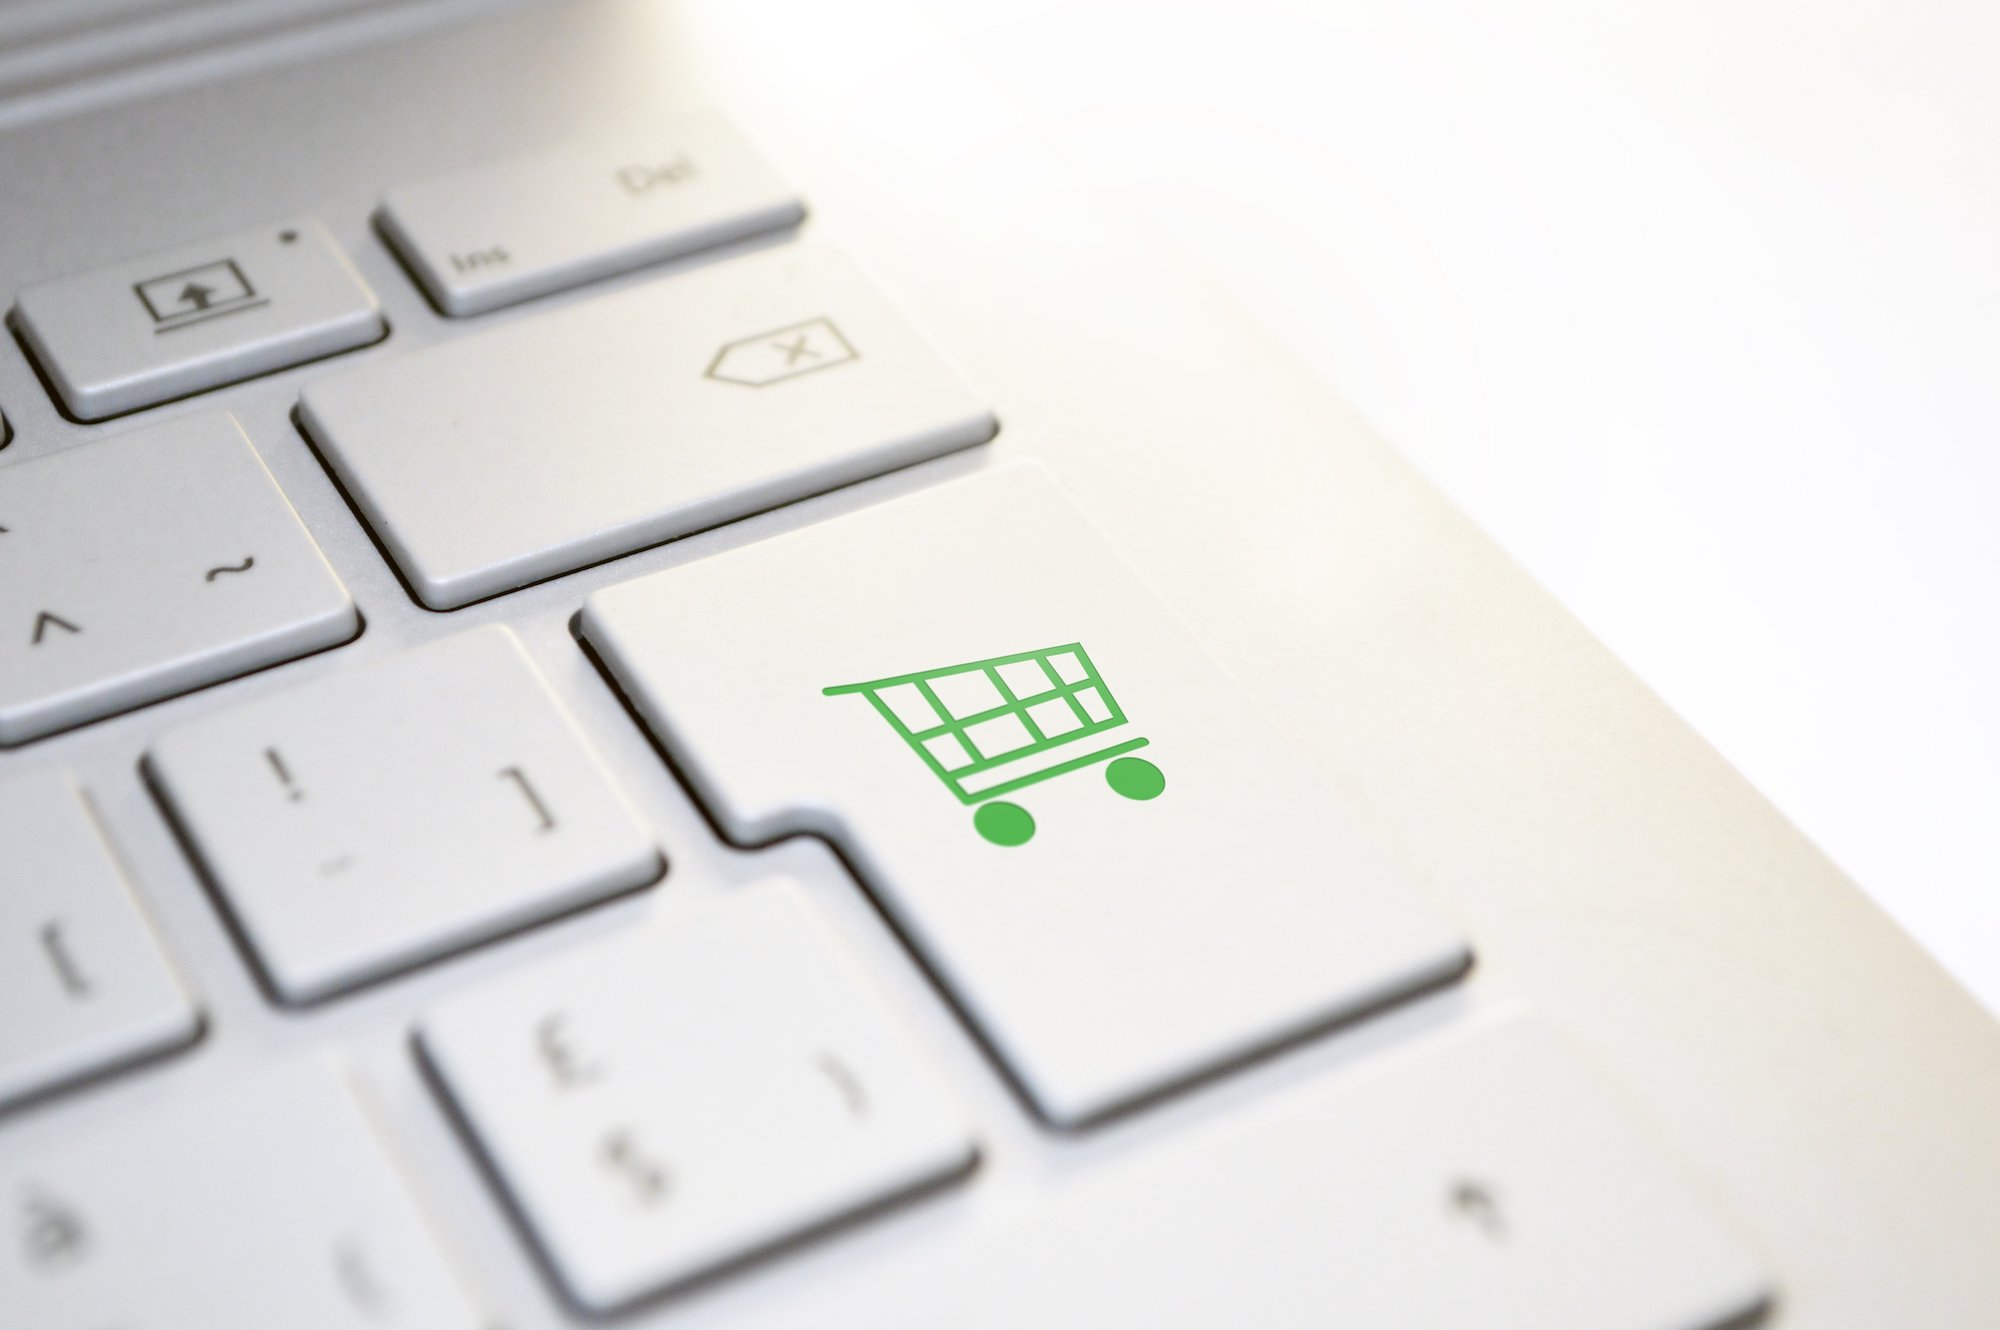 Online Plattform – Shop Apotheke erreicht rund 6 Millionen aktive Kunden